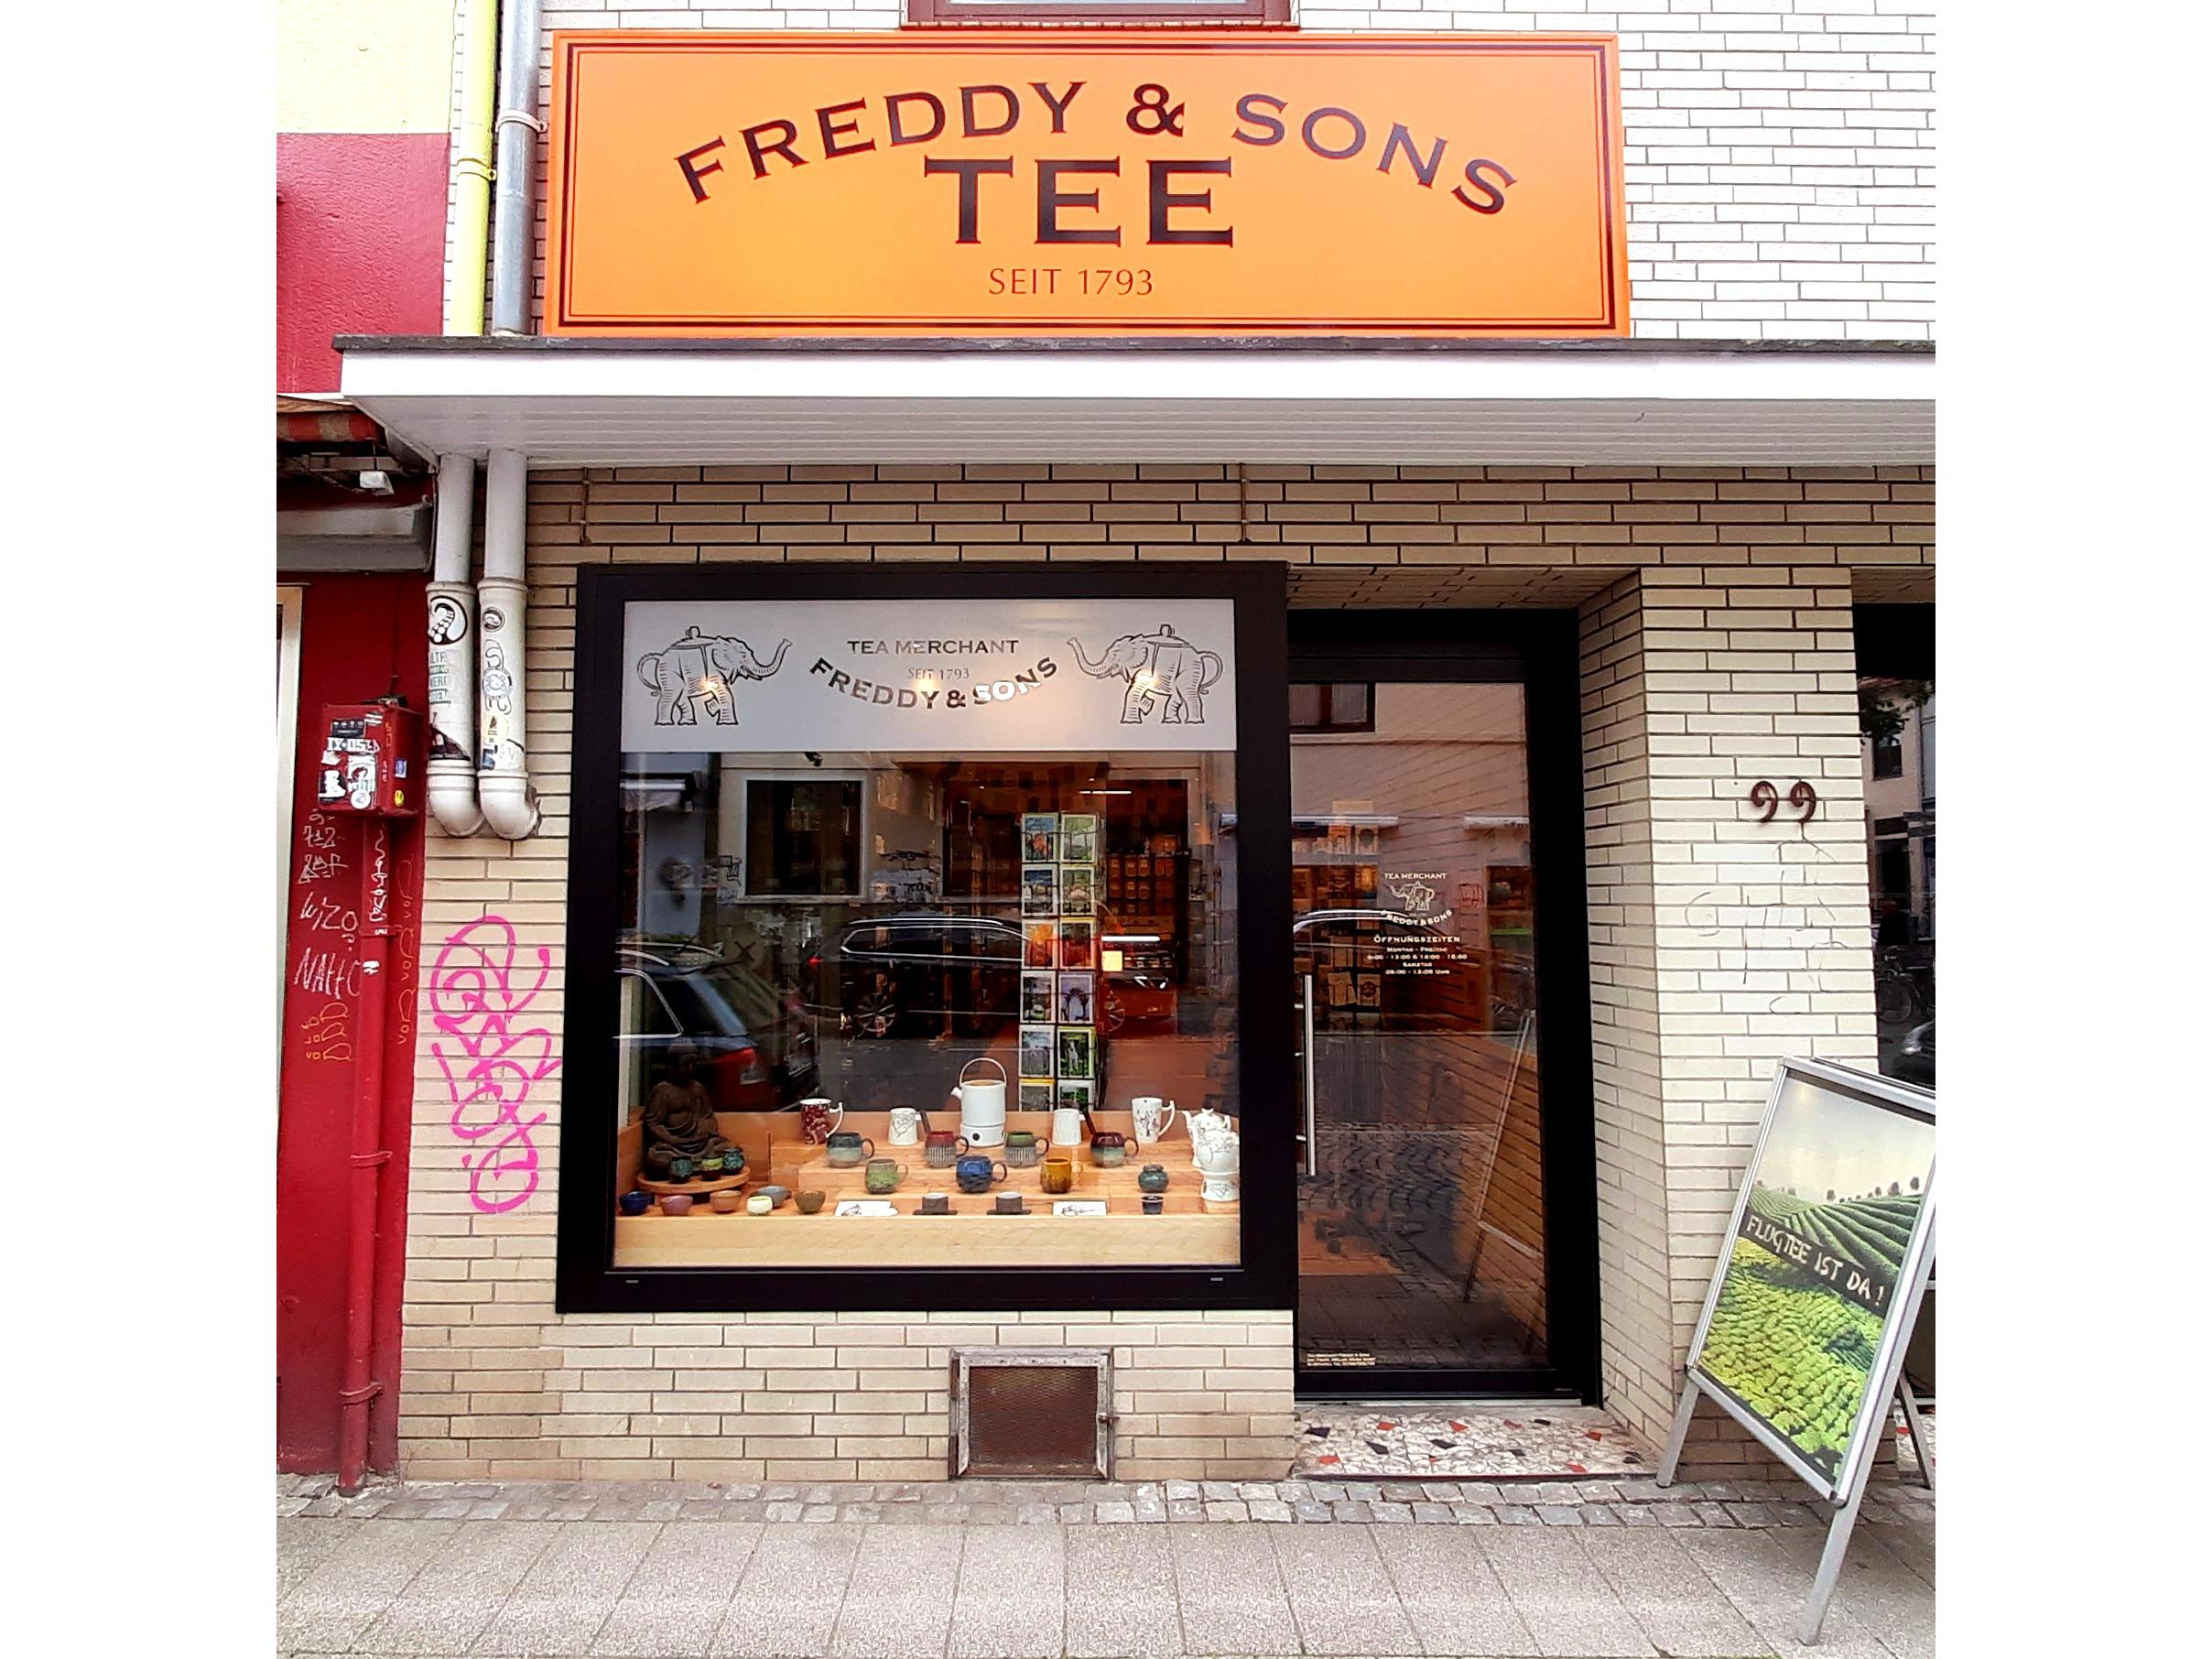 Tea Merchant Freddy & Sons, Pappelstrasse 99-101 in Bremen